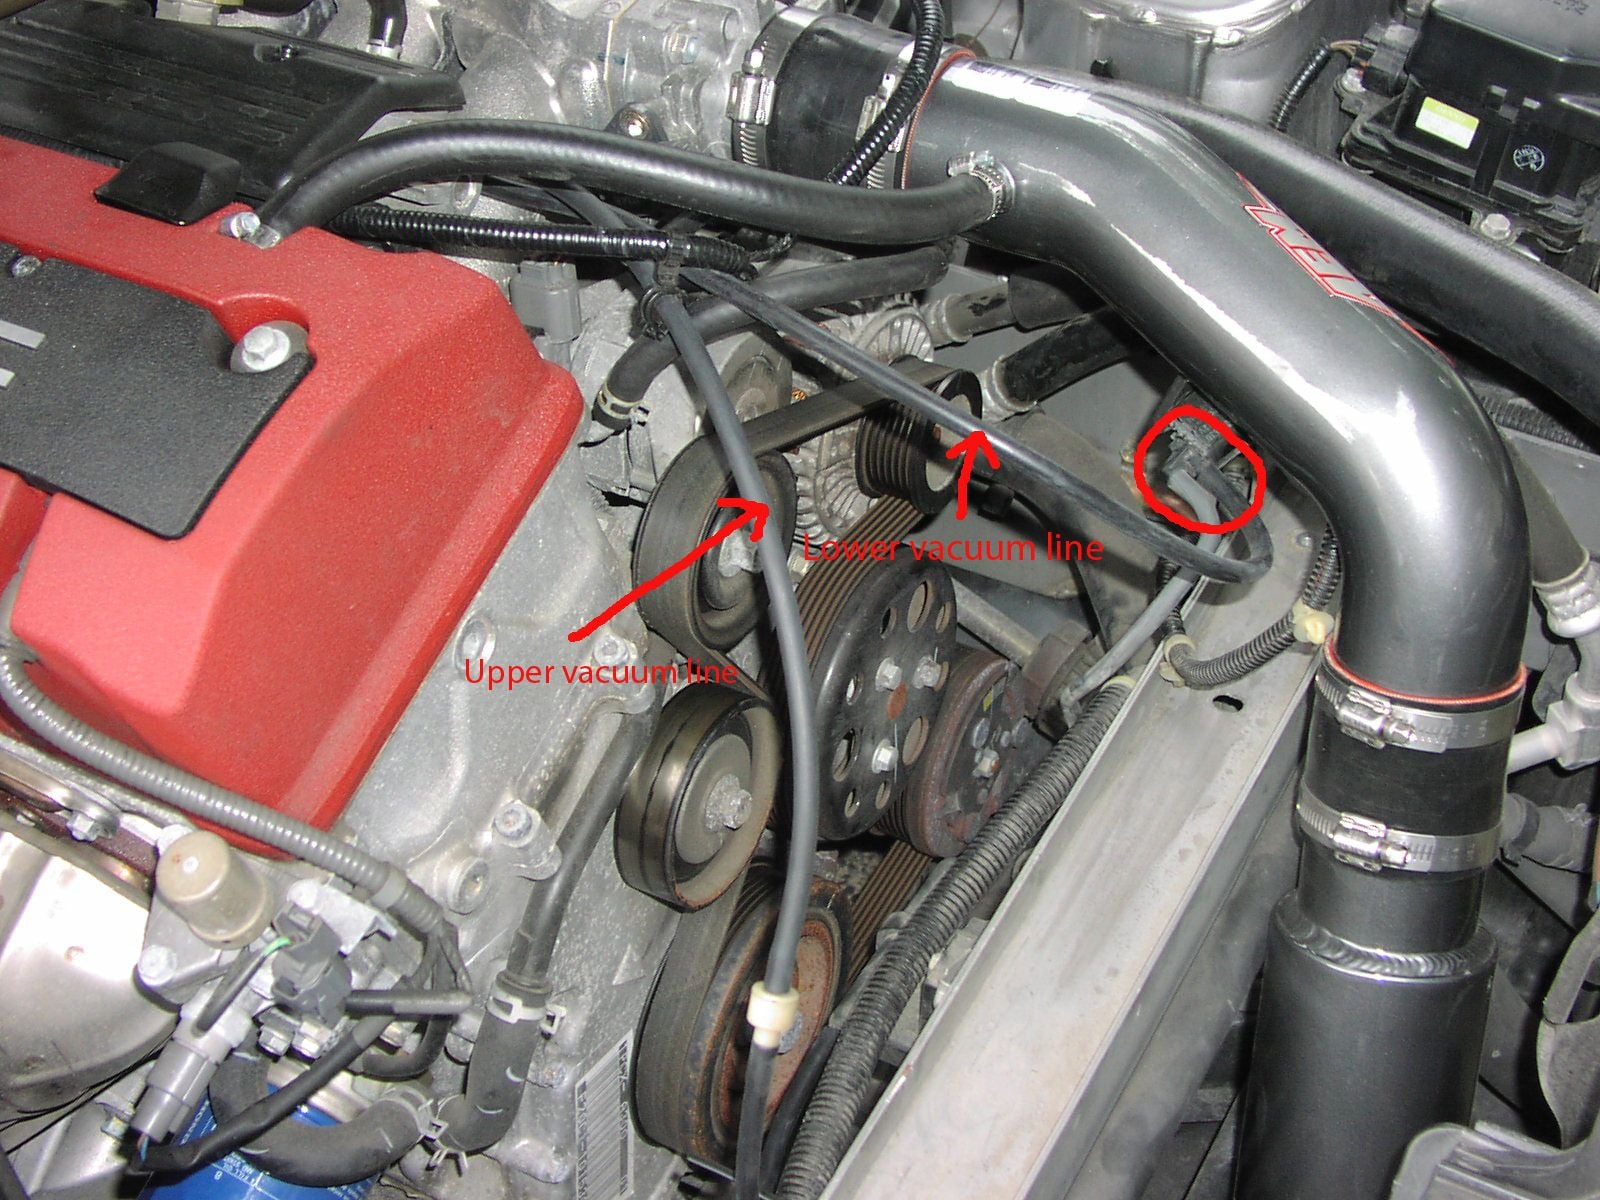 2001 Honda S2000 Engine Diagram - Wiring Diagrams